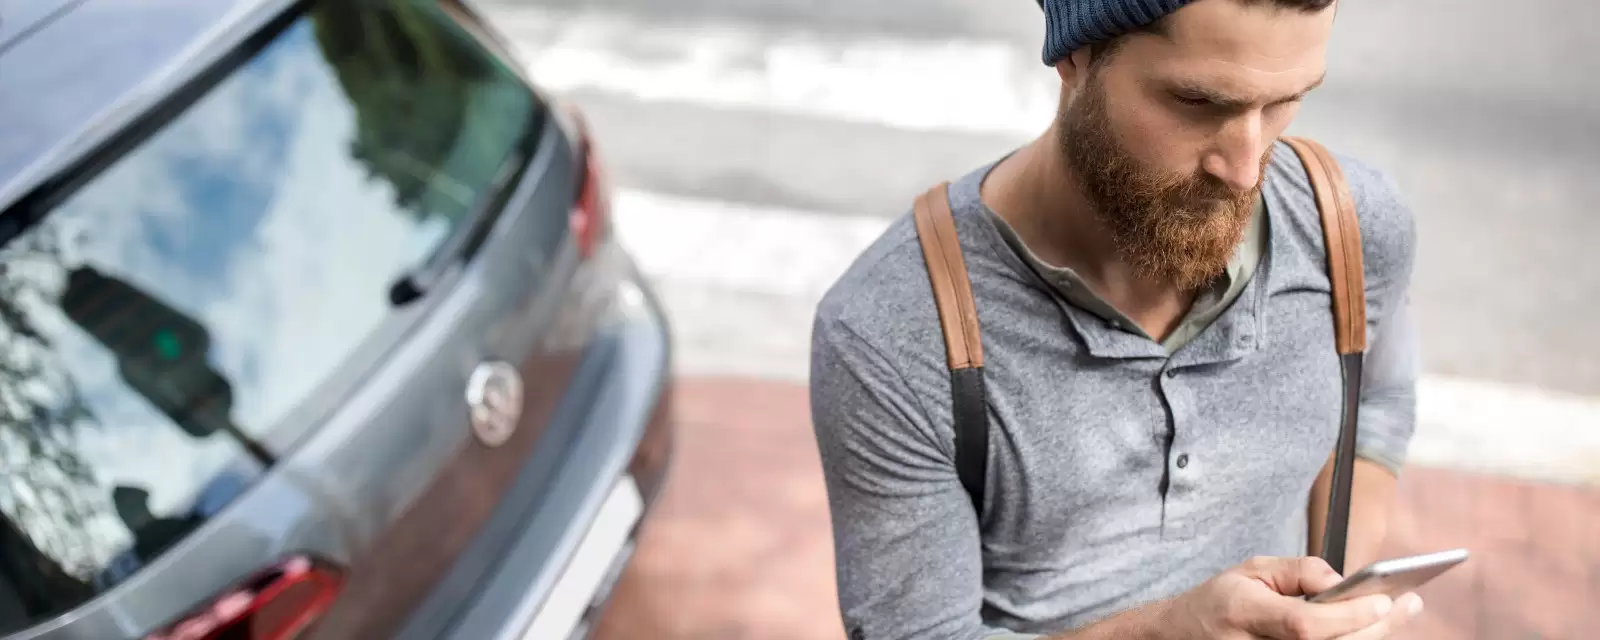 Ein Mann steht mit seinem Smartphone vor einem Auto.